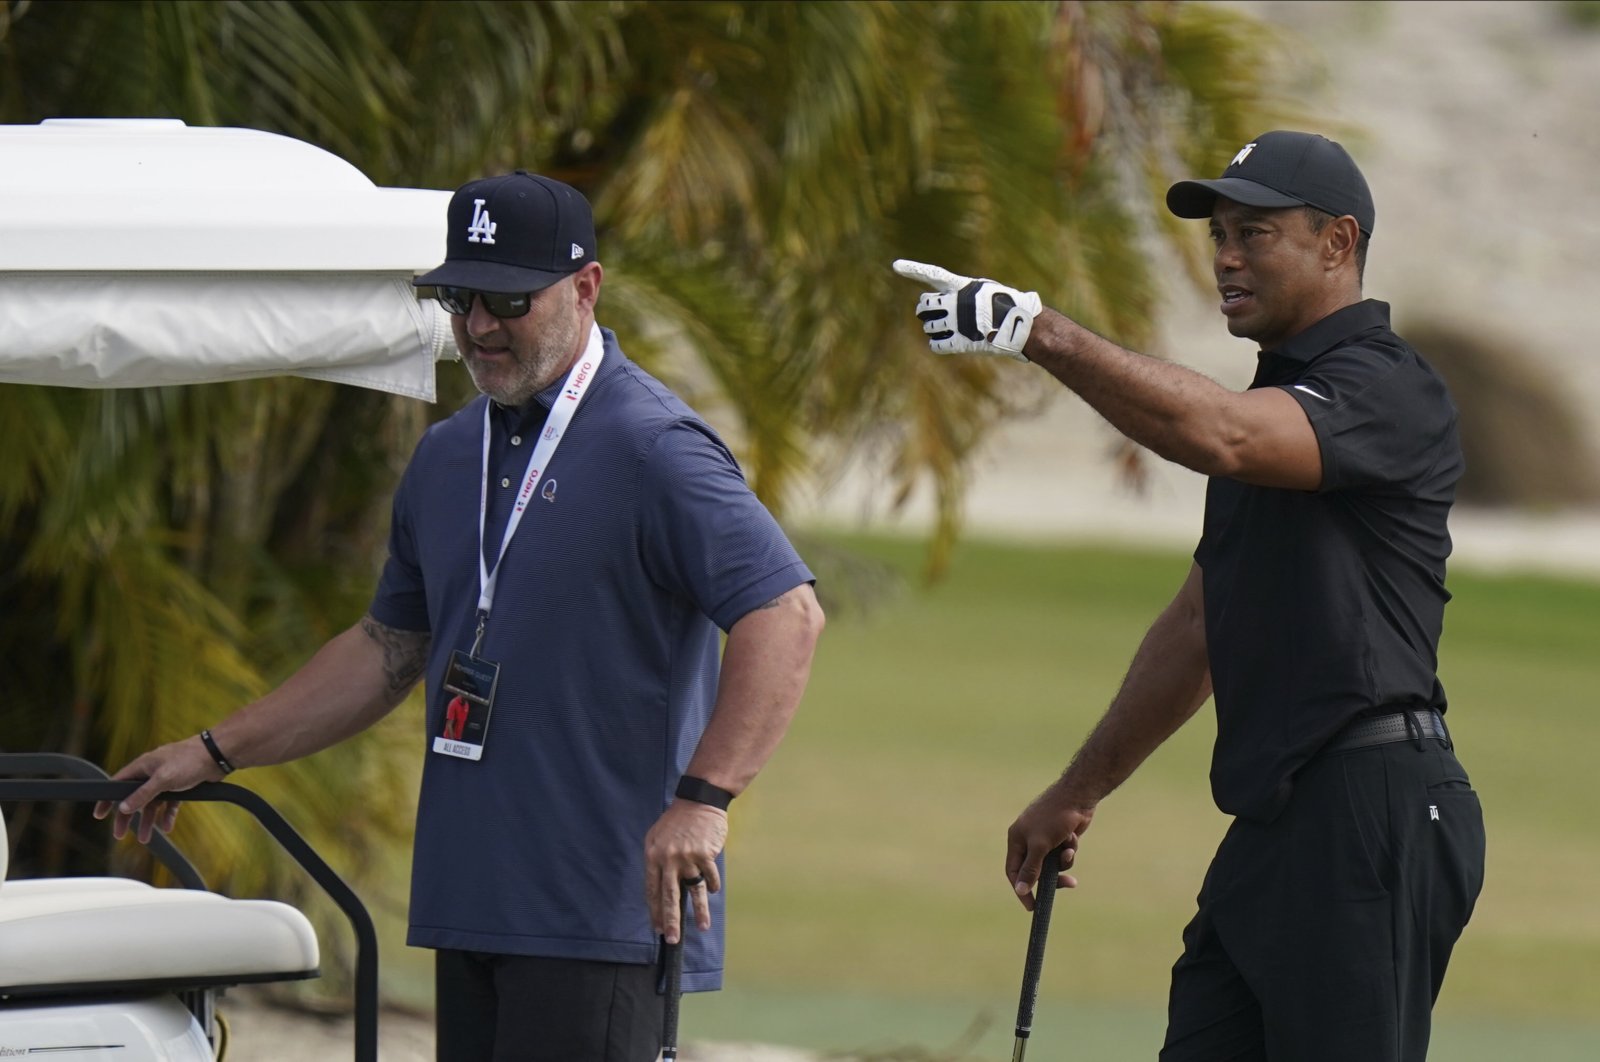 Kembali ‘jauh’ saat legenda golf Tiger Woods melanjutkan pemulihan